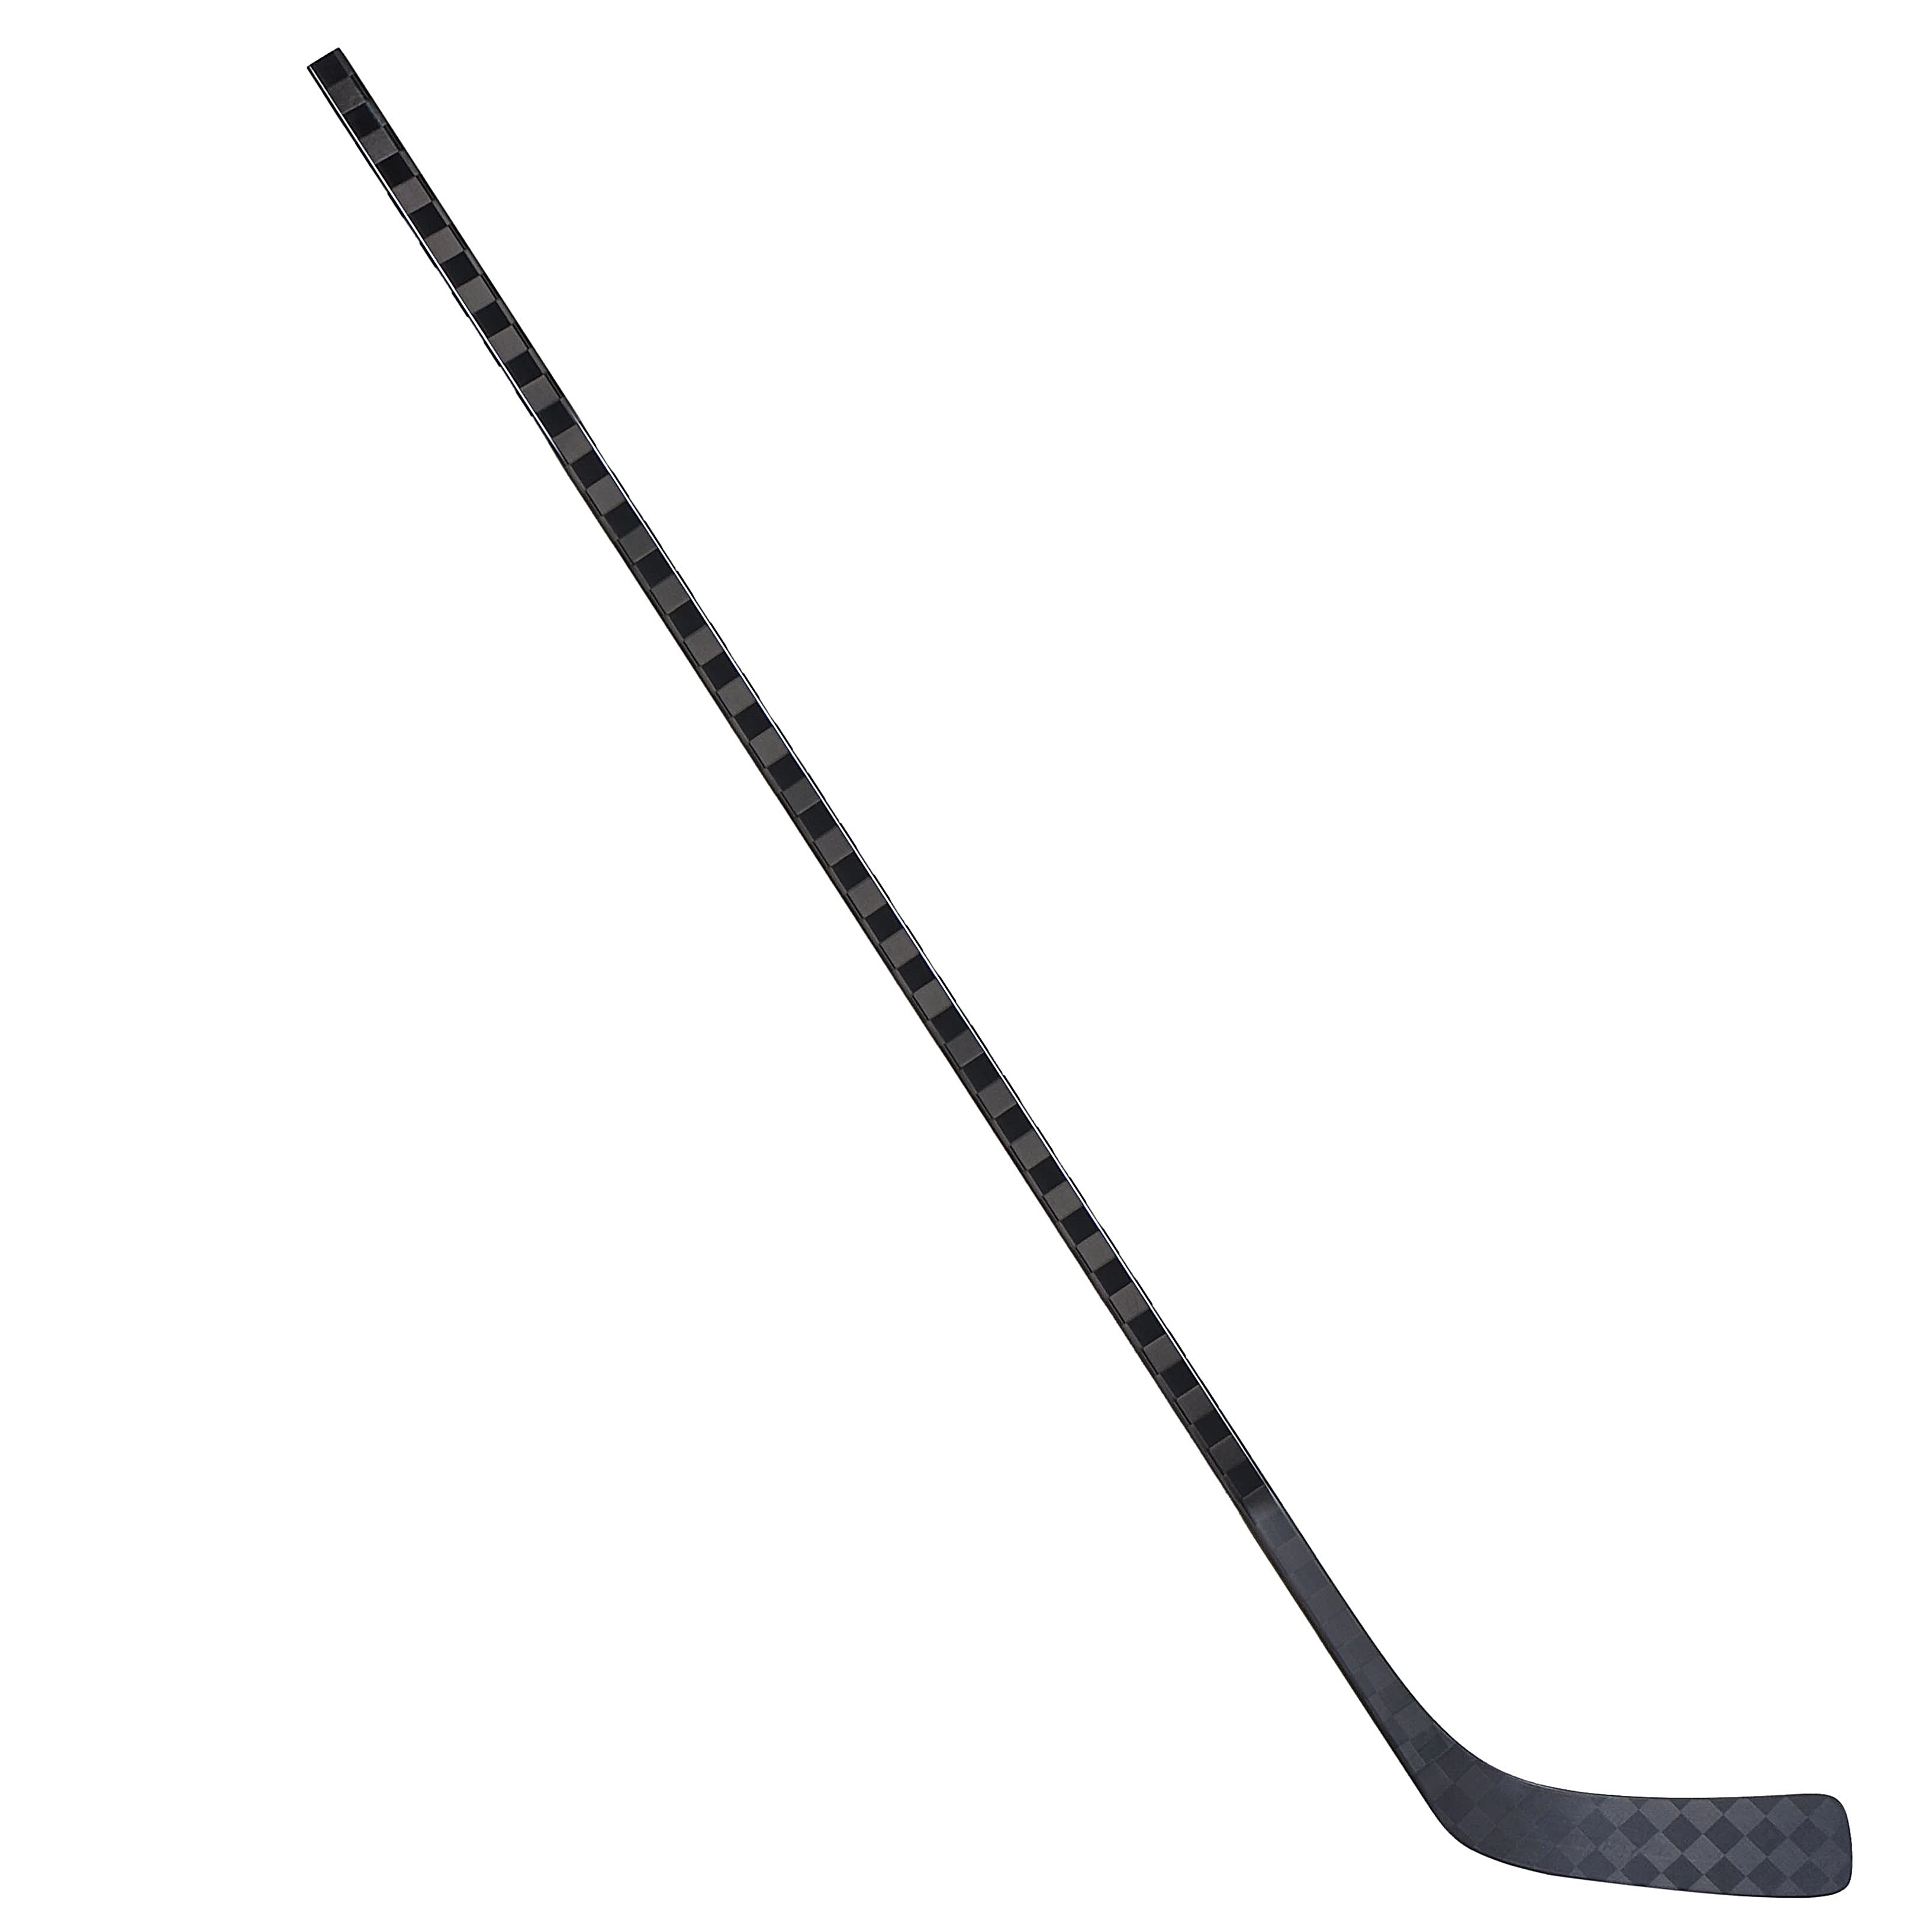 空白的曲棍球棒冰球棒碳专业便宜的 hockey 球棒批发商